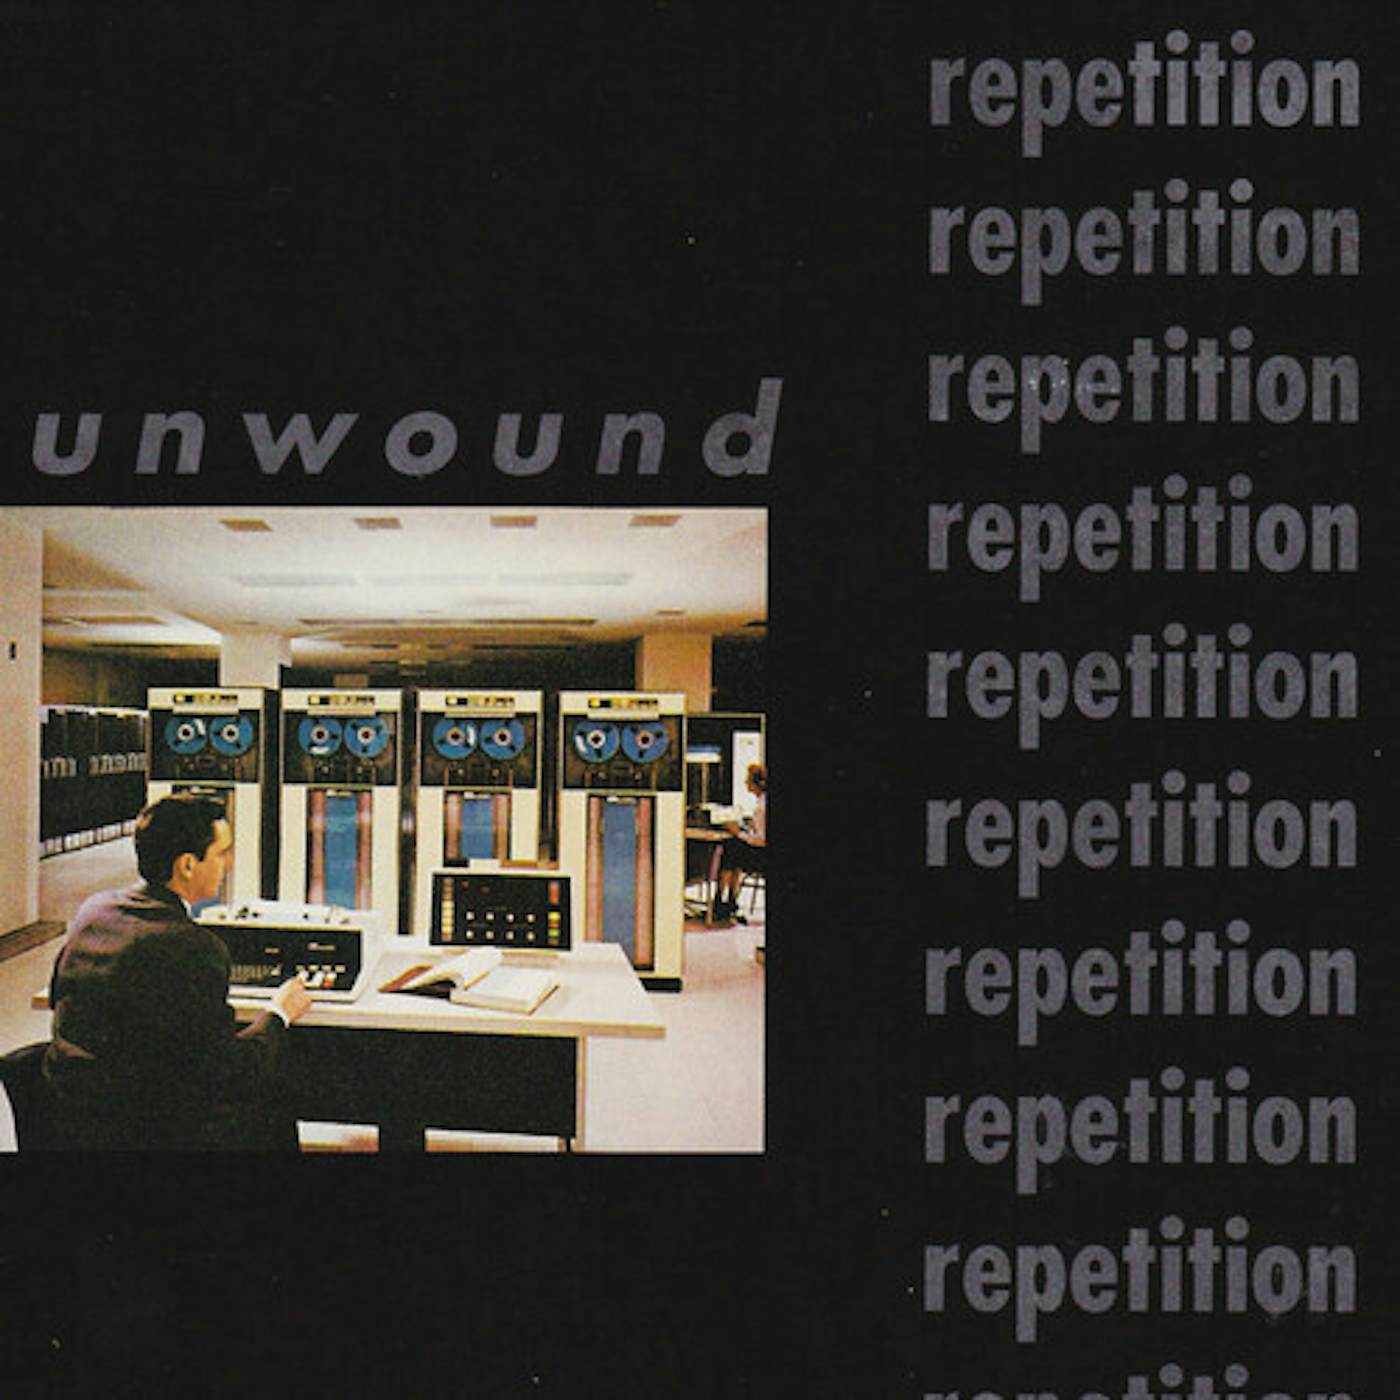 Unwound Repetition Vinyl Record